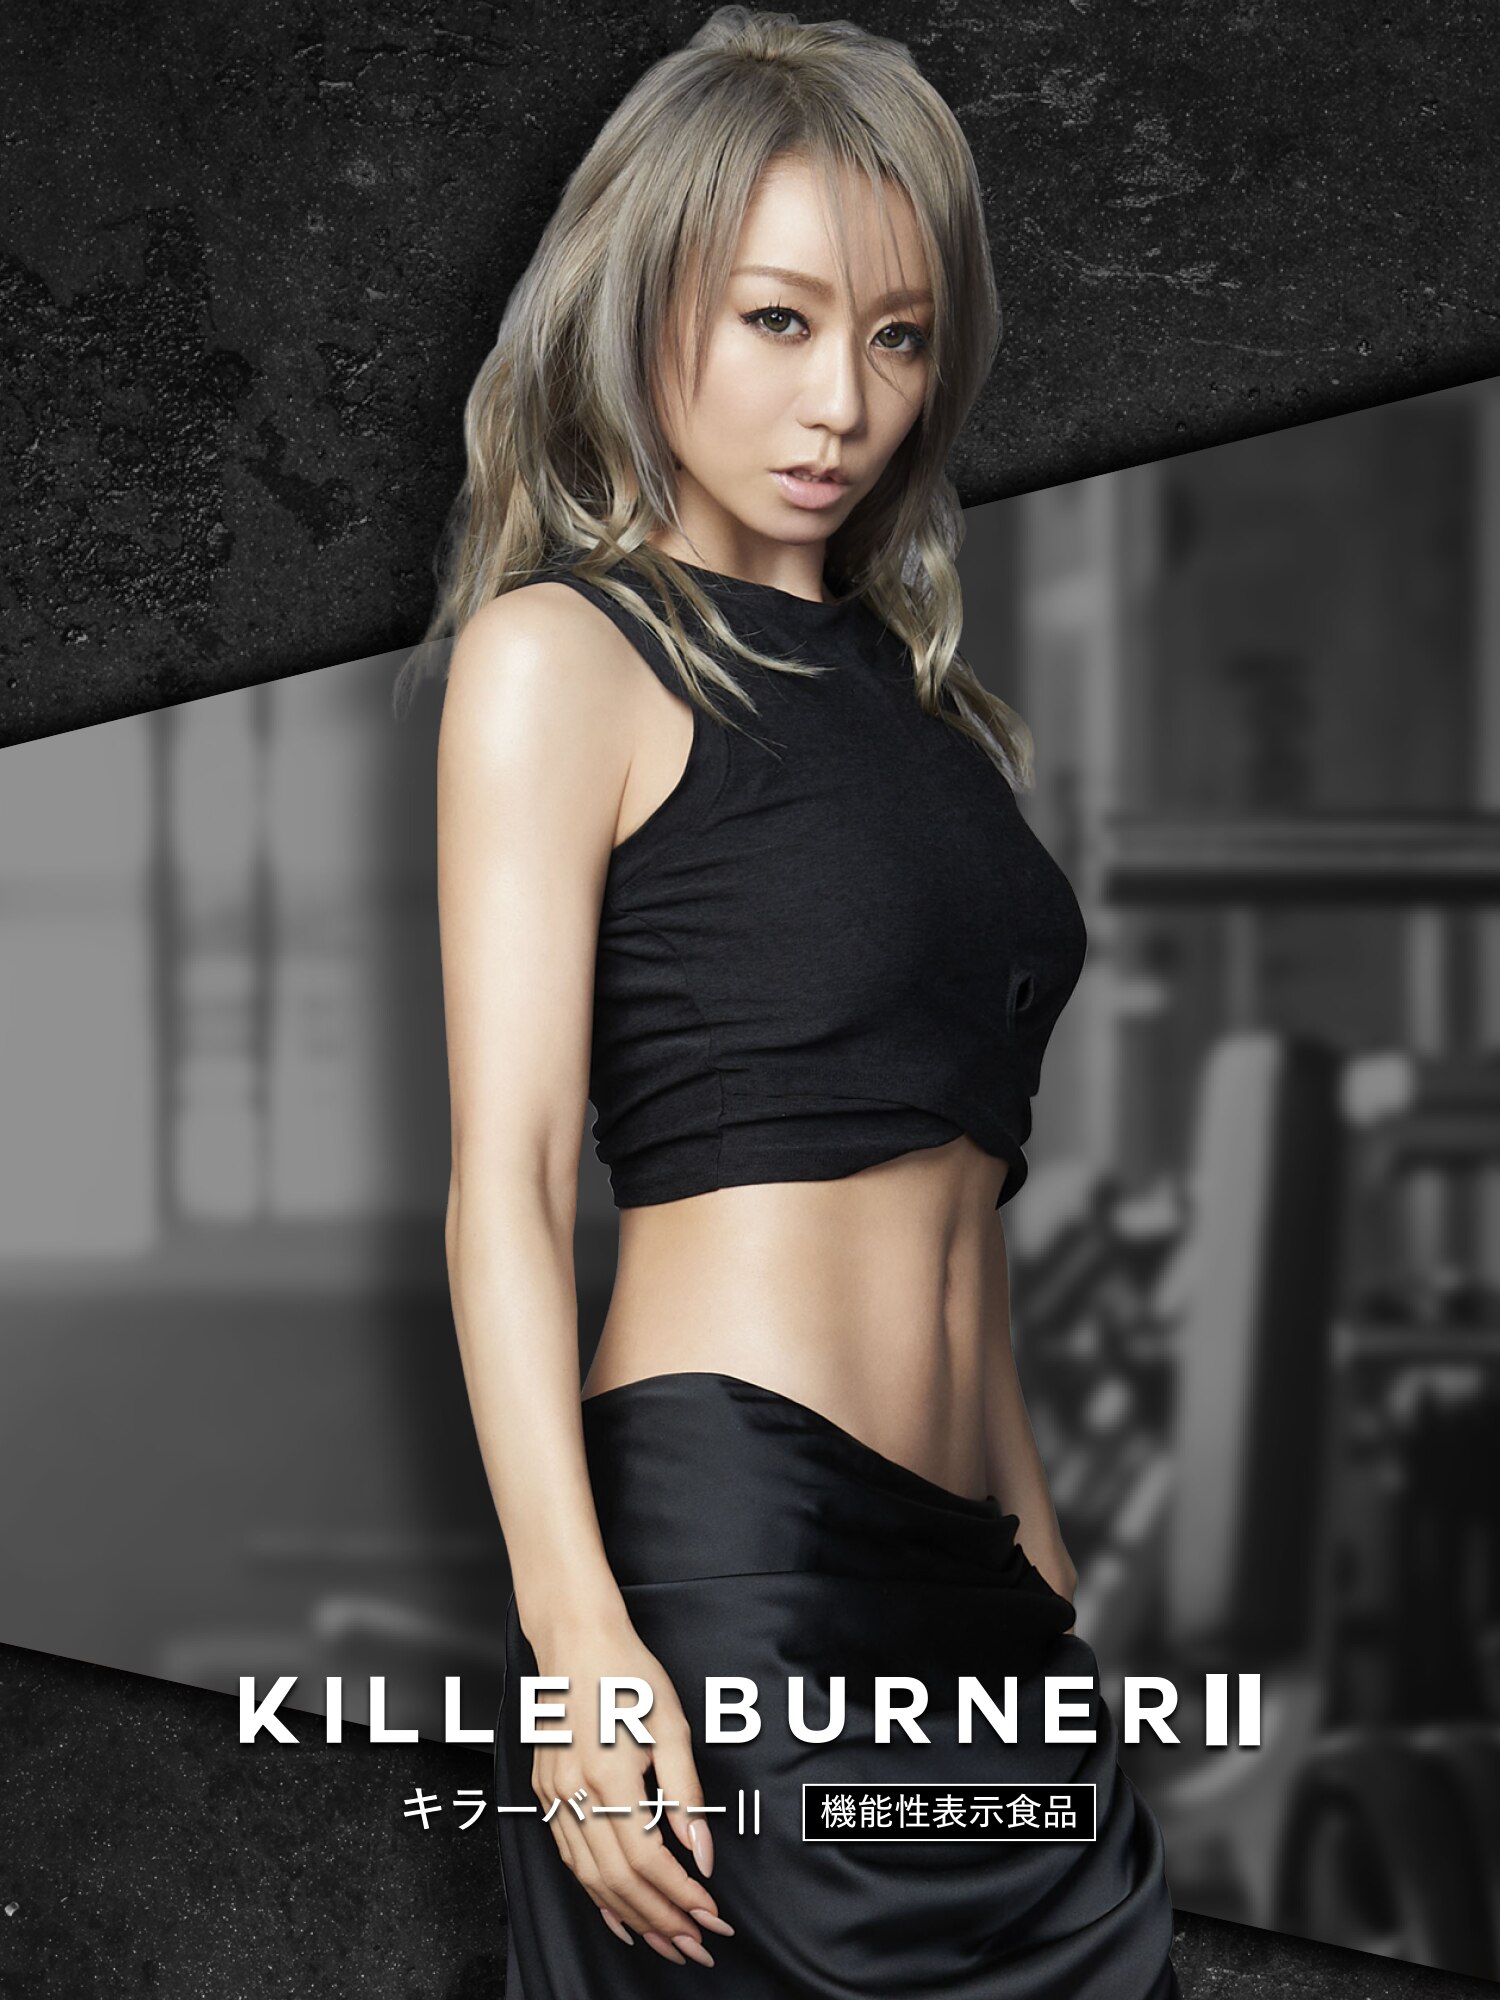 キラーバーナーシリーズからKILLER BURNER Ⅱ（キラーバーナー2